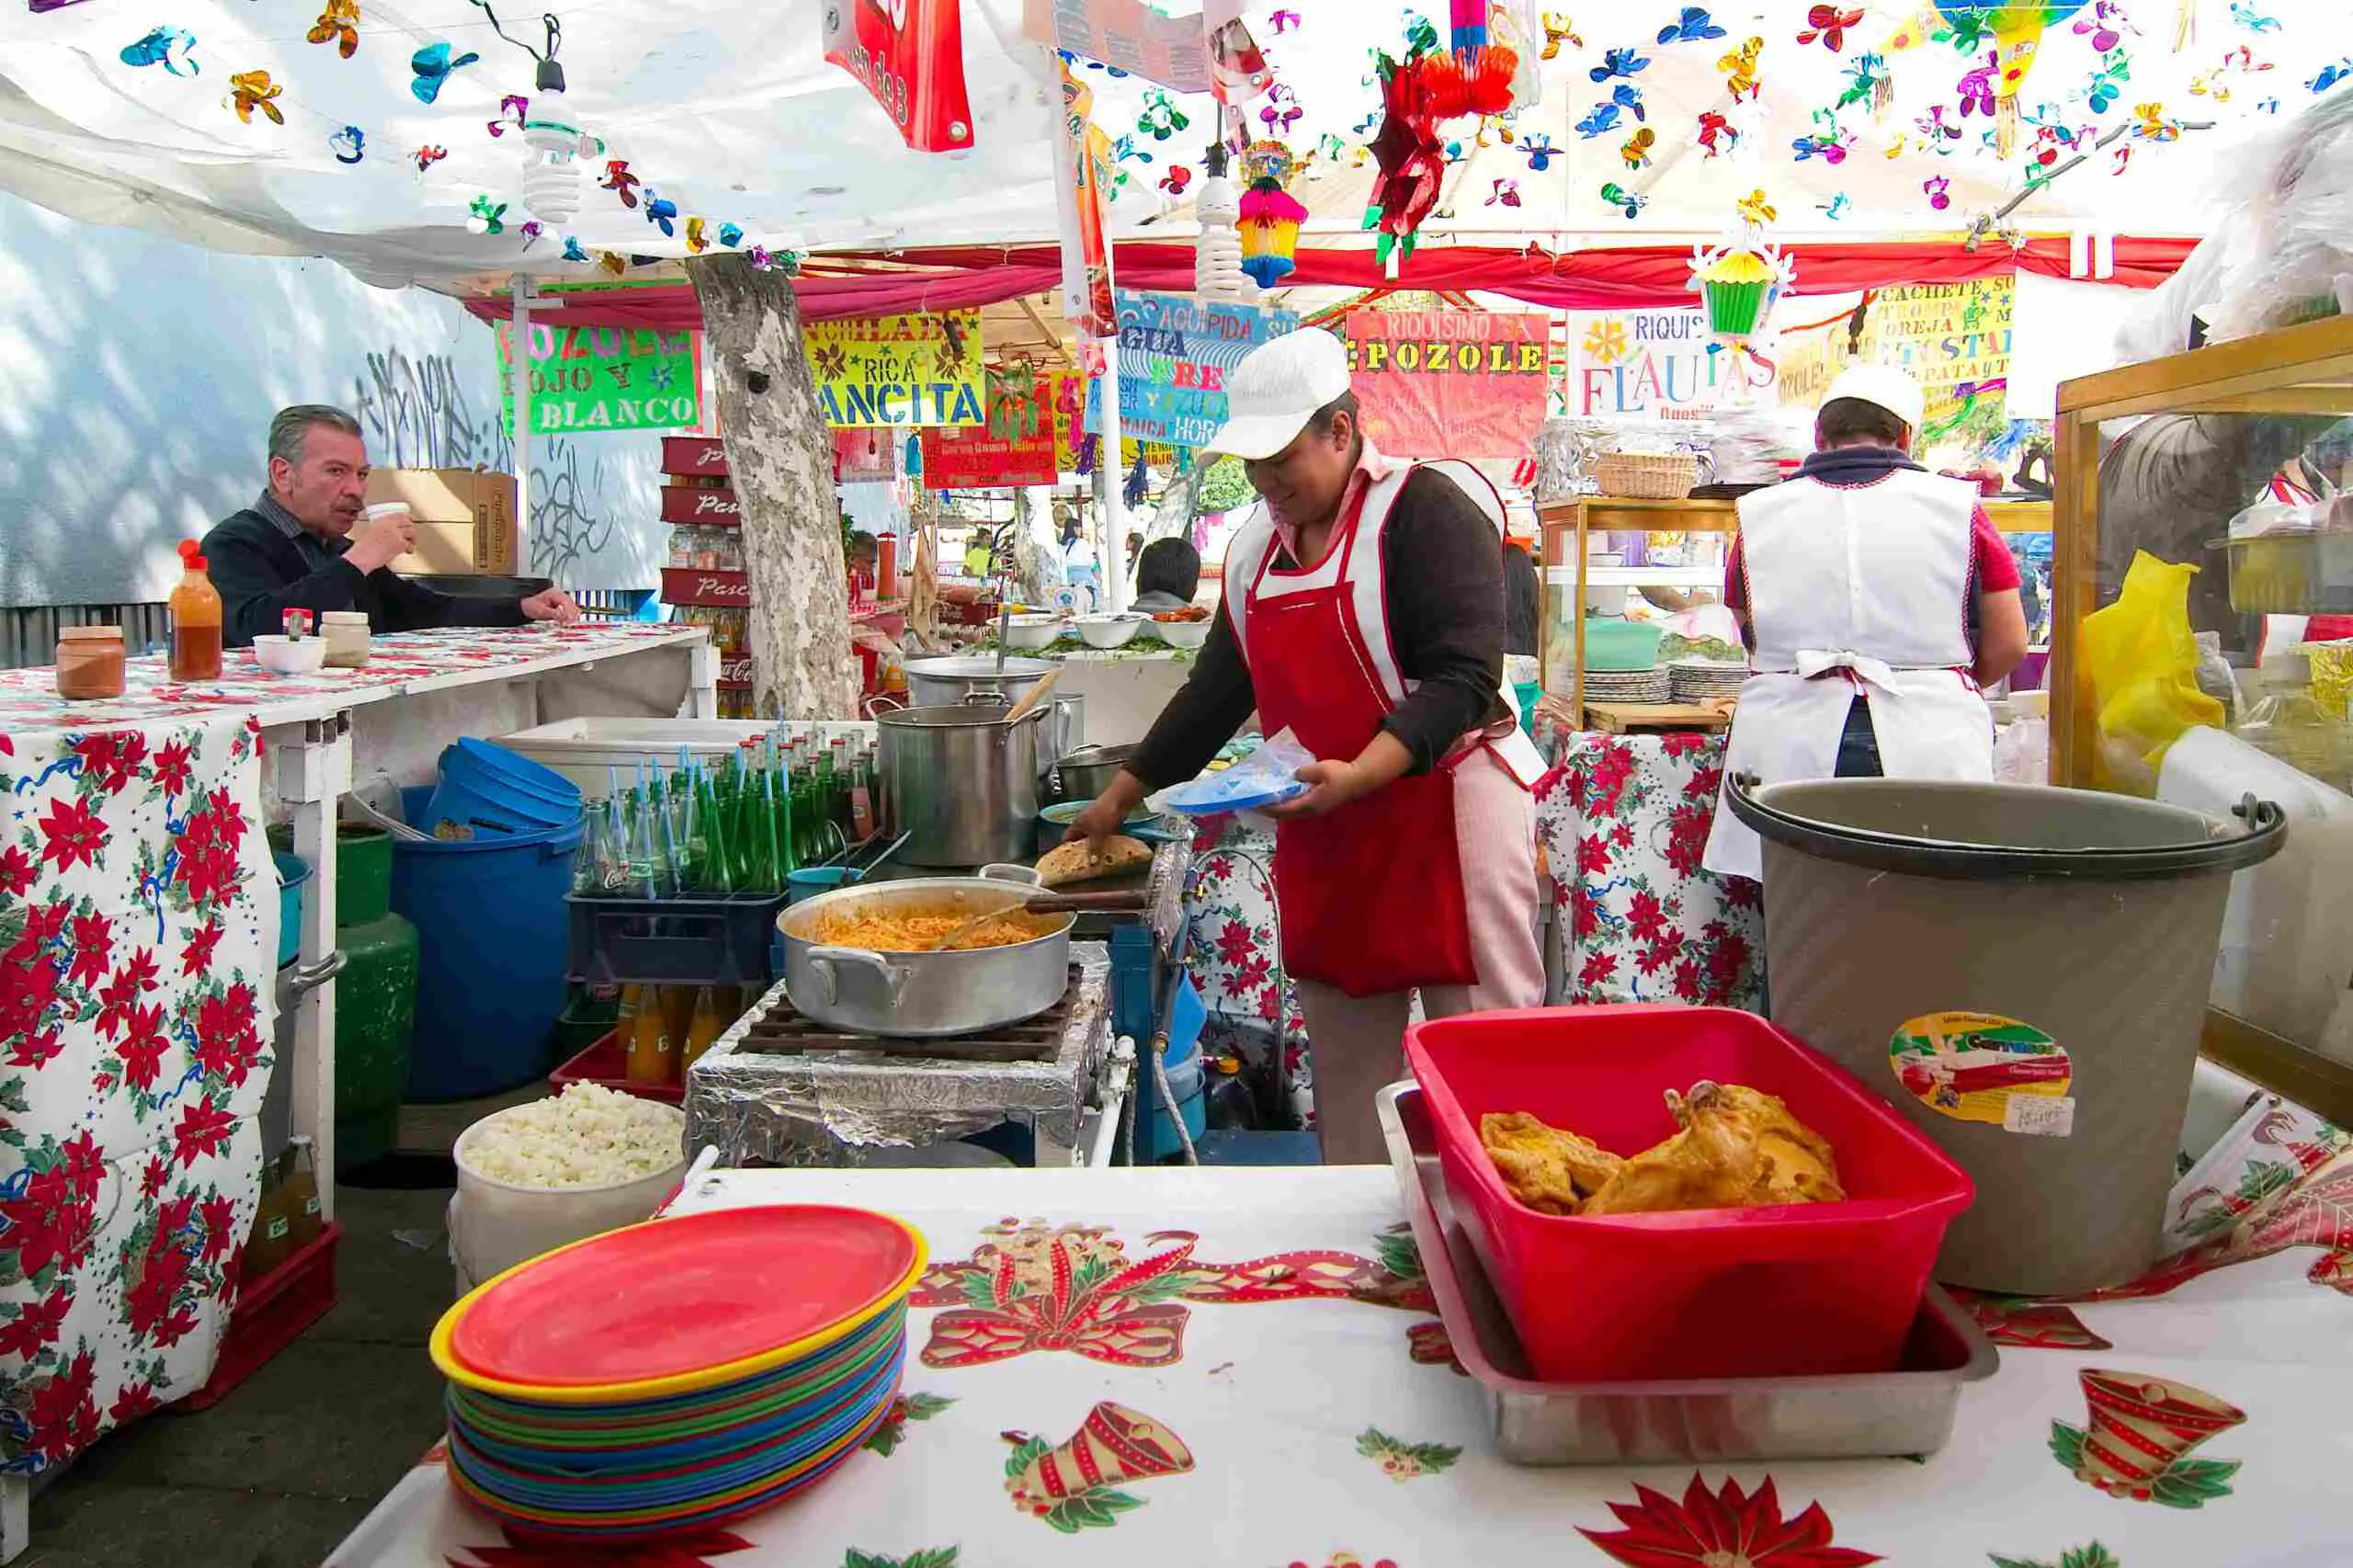 puestos callejeros coloridos en mexico